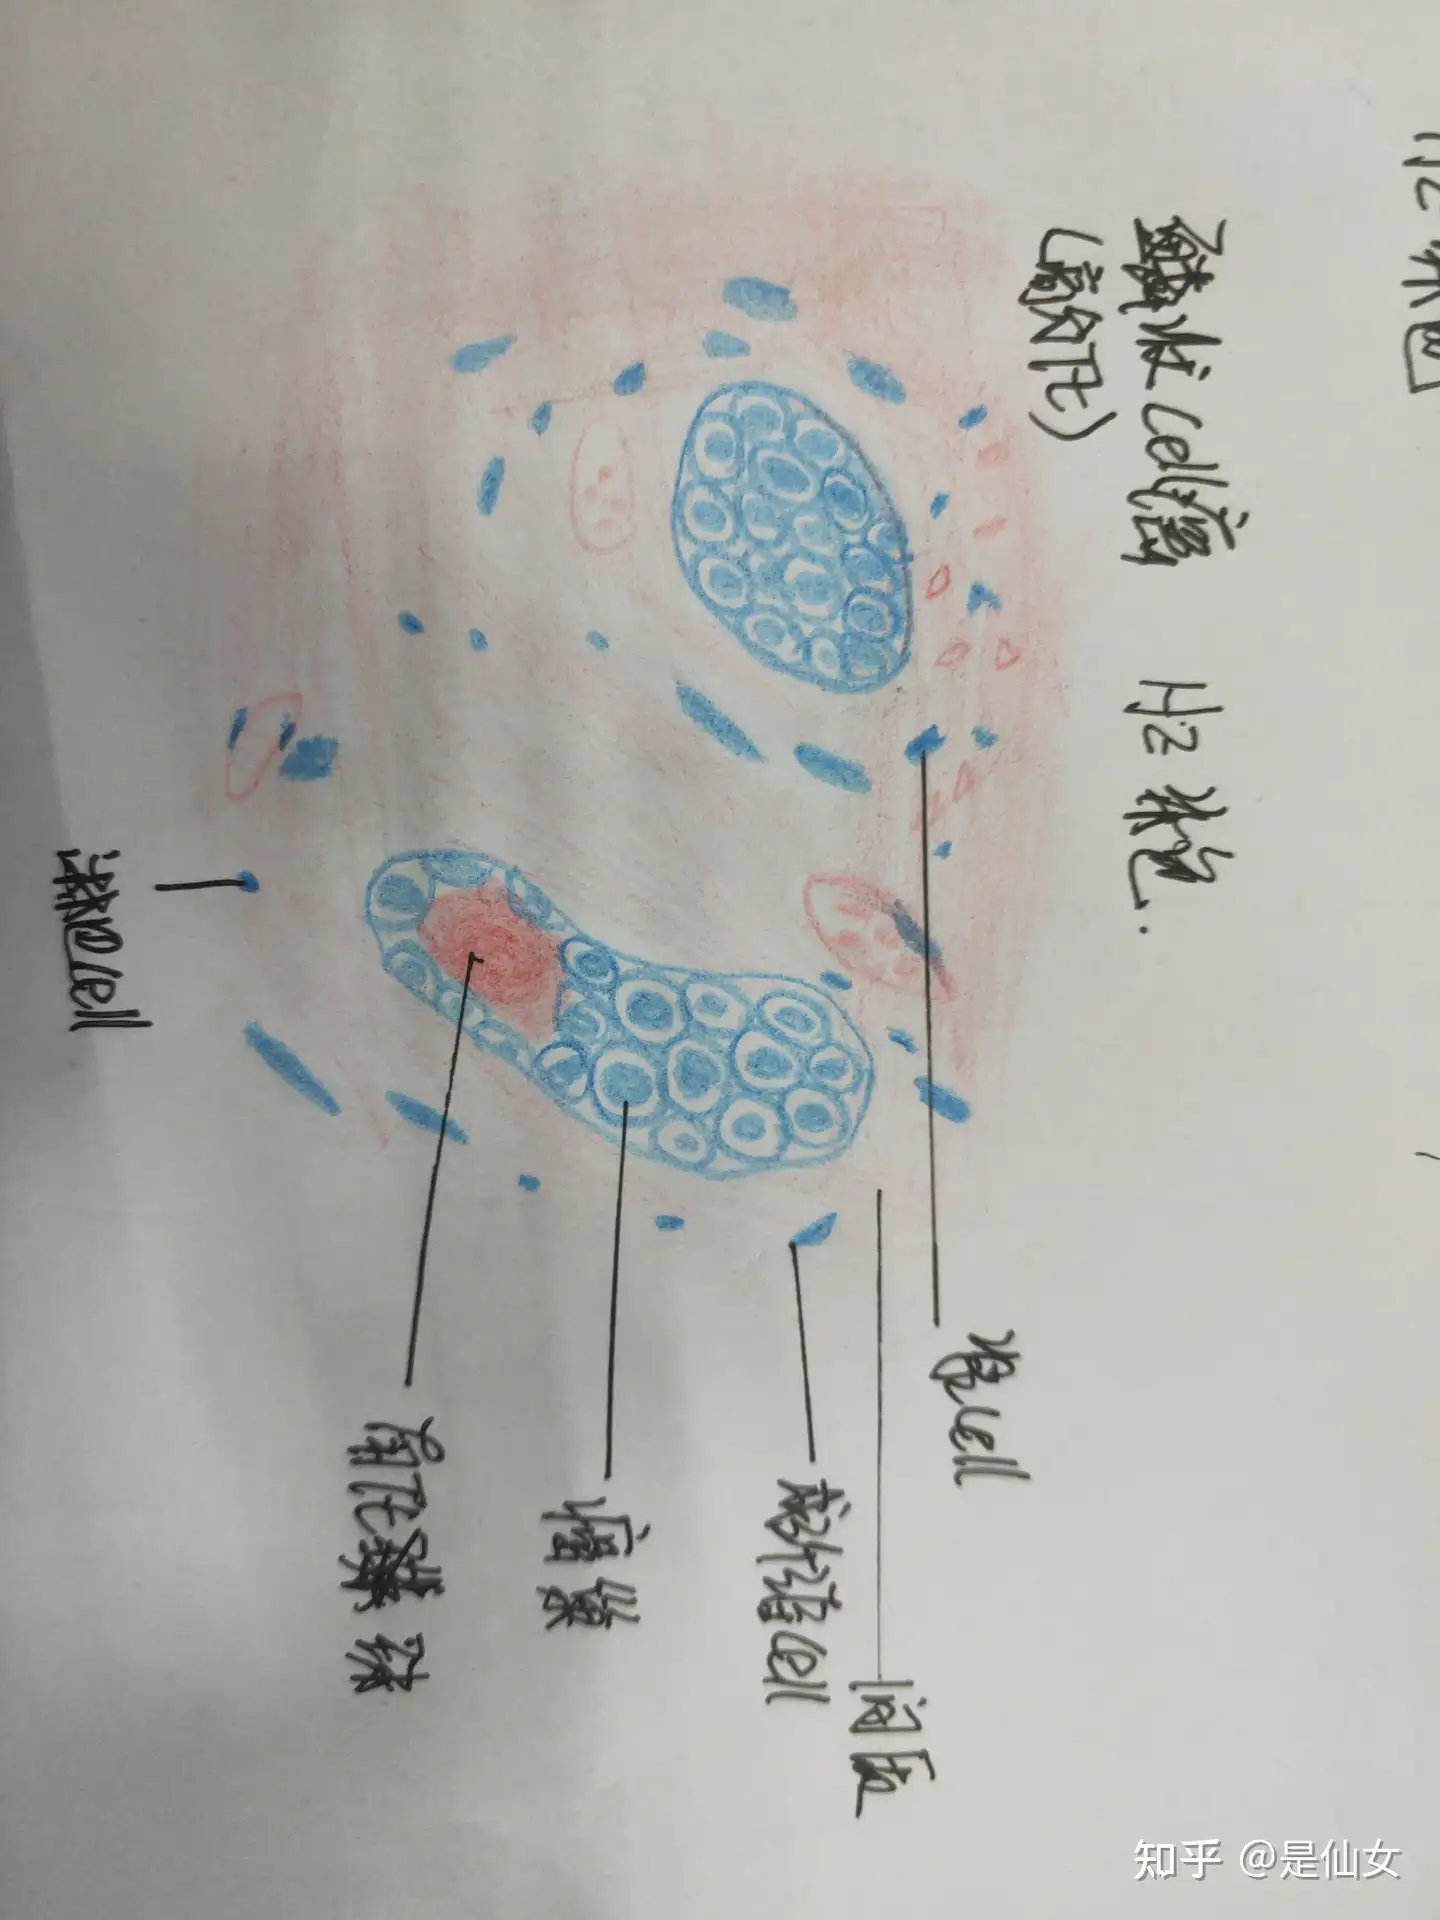 病理学红蓝铅笔绘画图实验课题: 平滑肌瘤与鳞状上皮细胞癌- 知乎